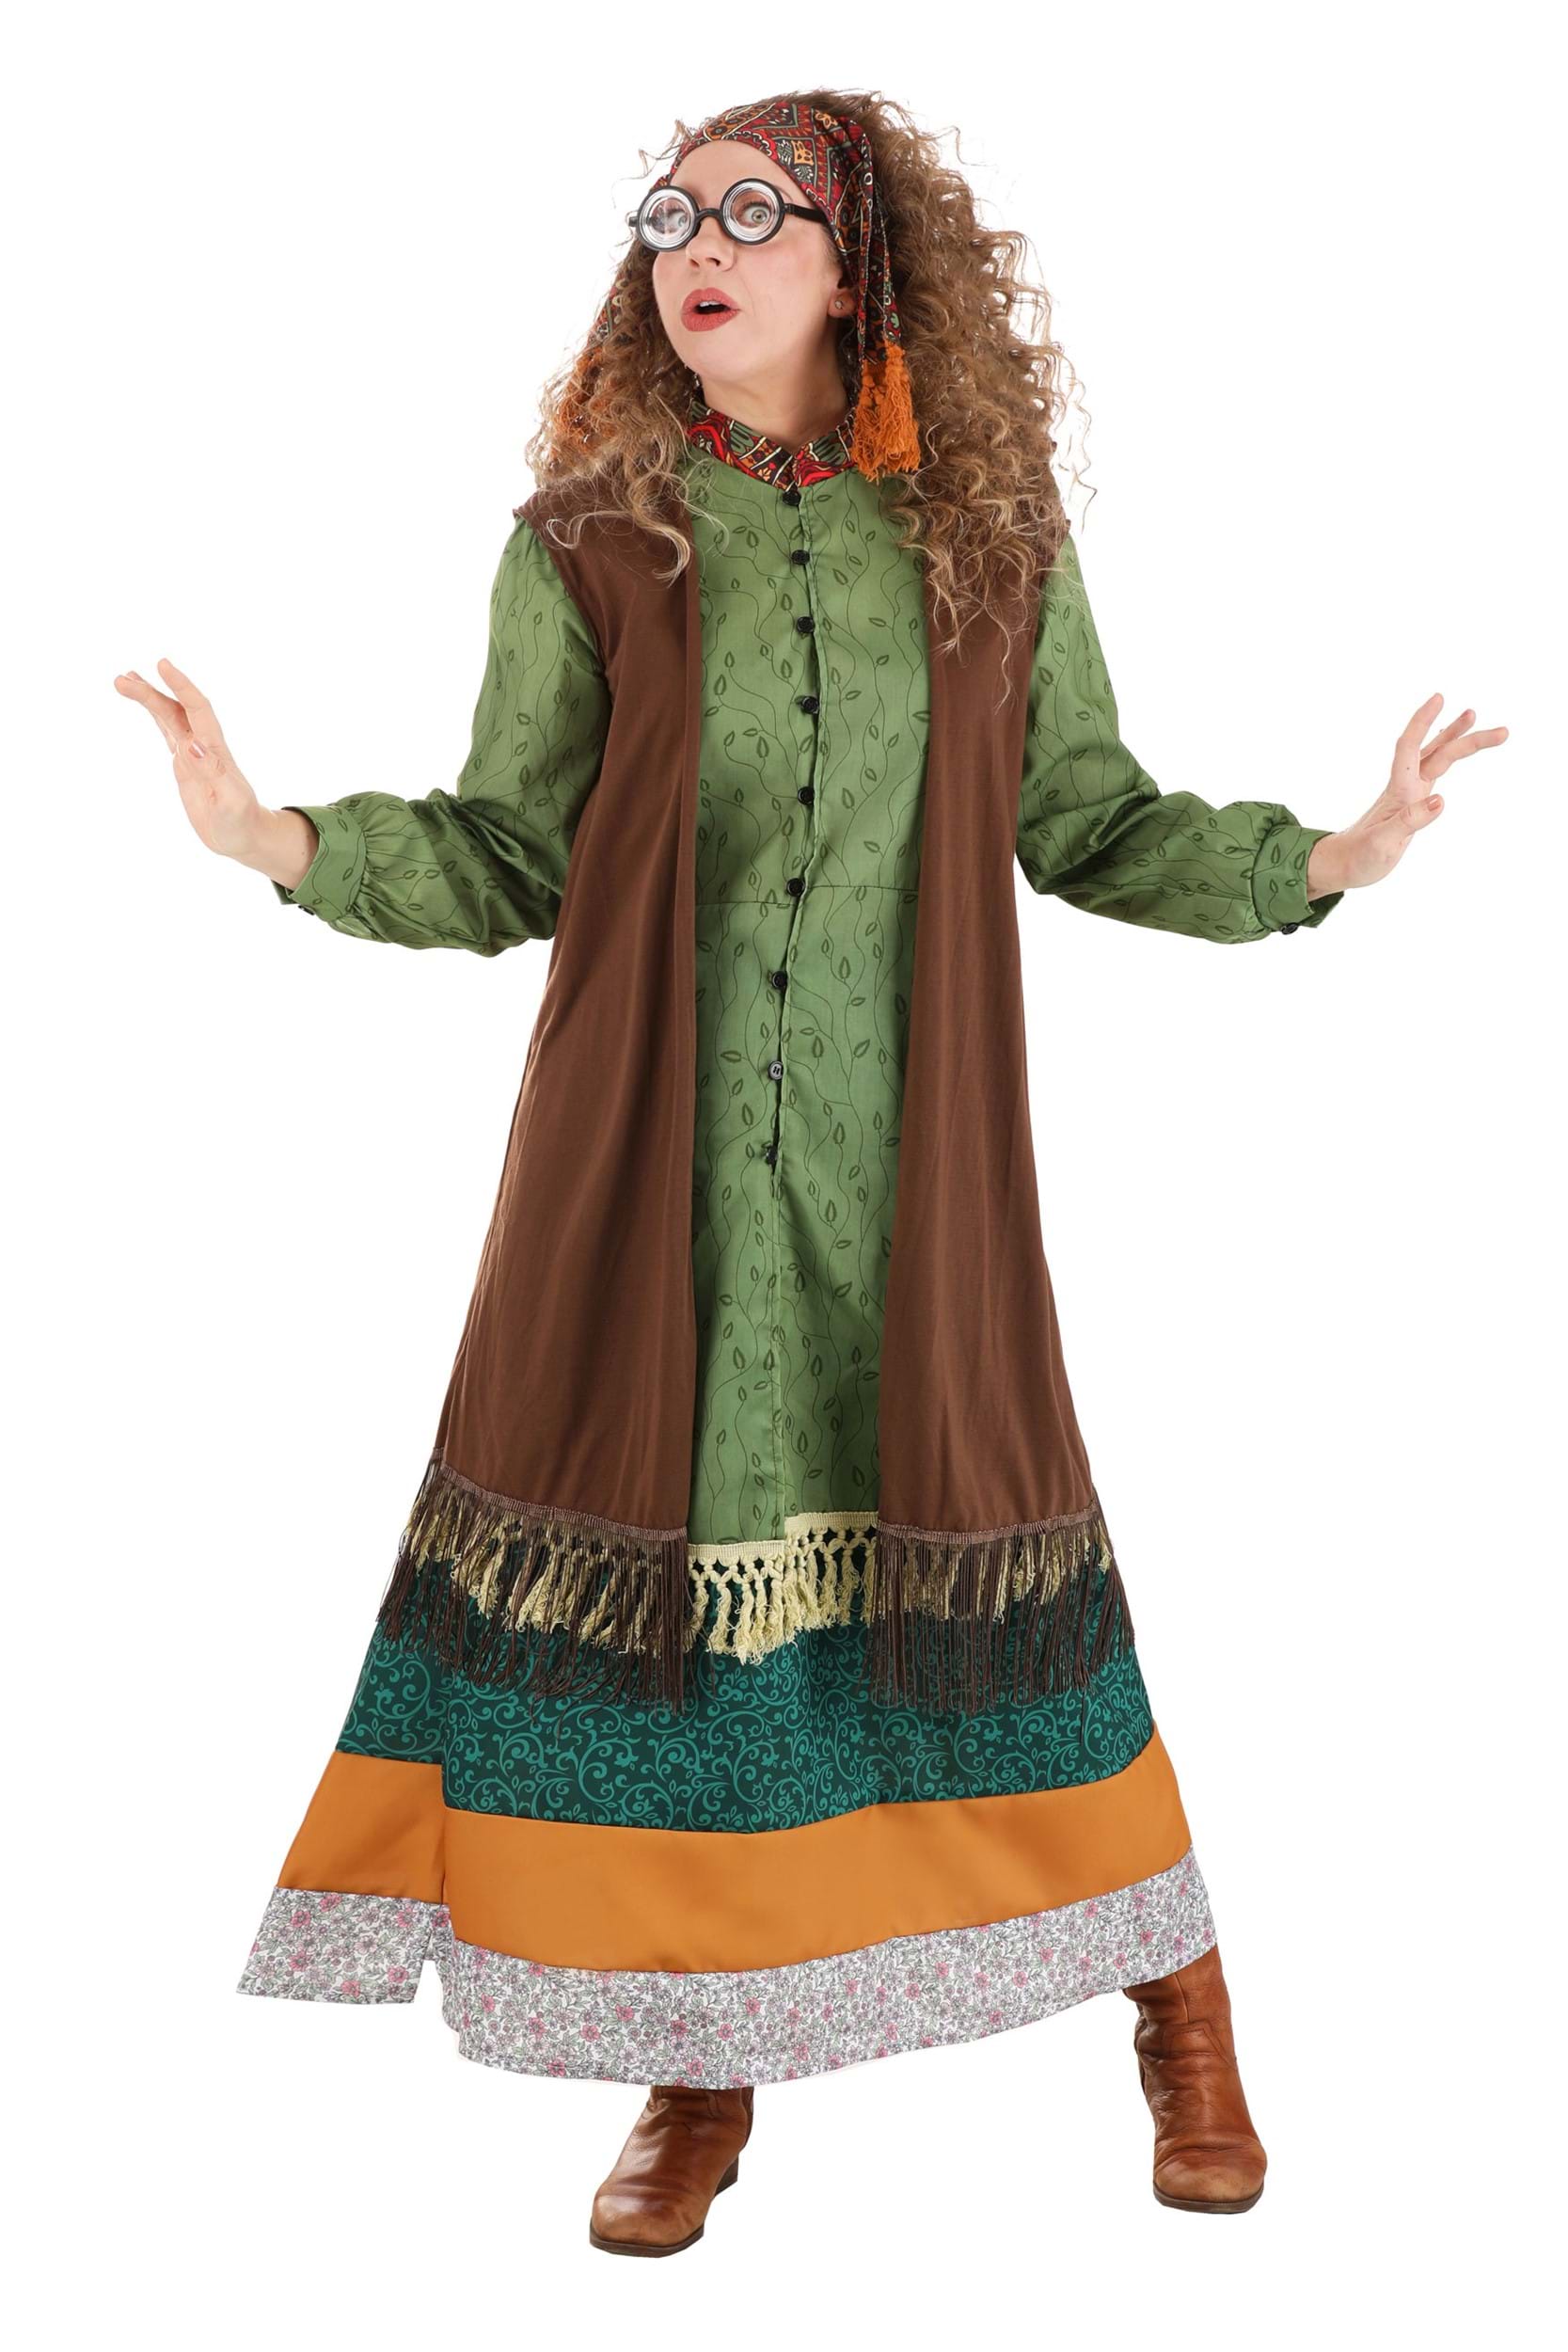 Image of Harry Potter Deluxe Plus Size Women's Professor Trelawney Costume ID JLJLF1060PL-4X